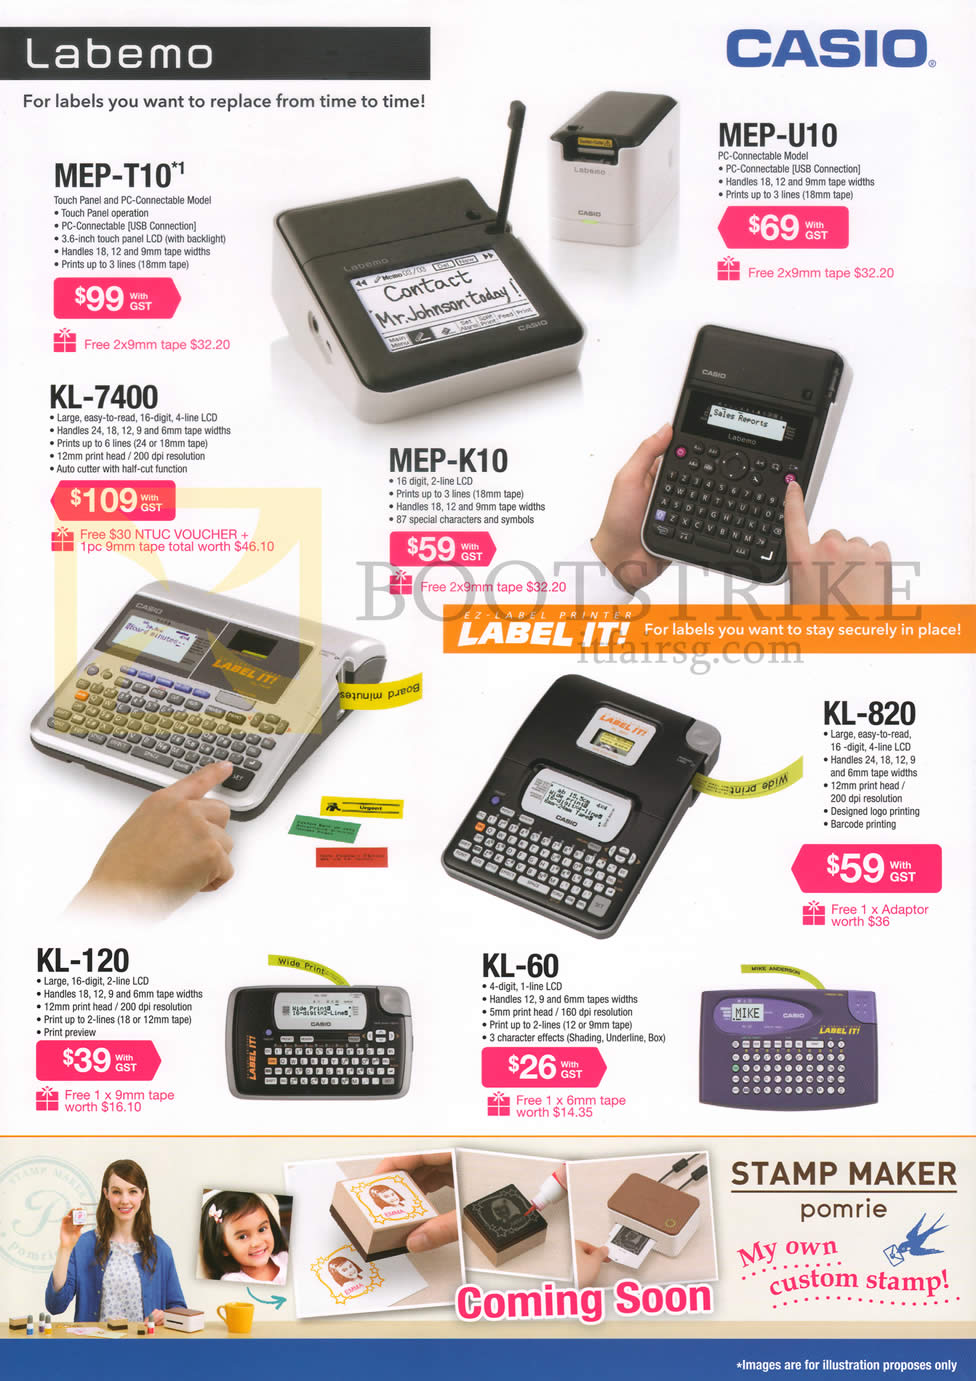 COMEX 2014 price list image brochure of Casio Labellers Labemo, Label It, MEP-T10, KL-7400, MEP-K10, KL-120, KL-60, KL-820, Stamp Maker Pomrie